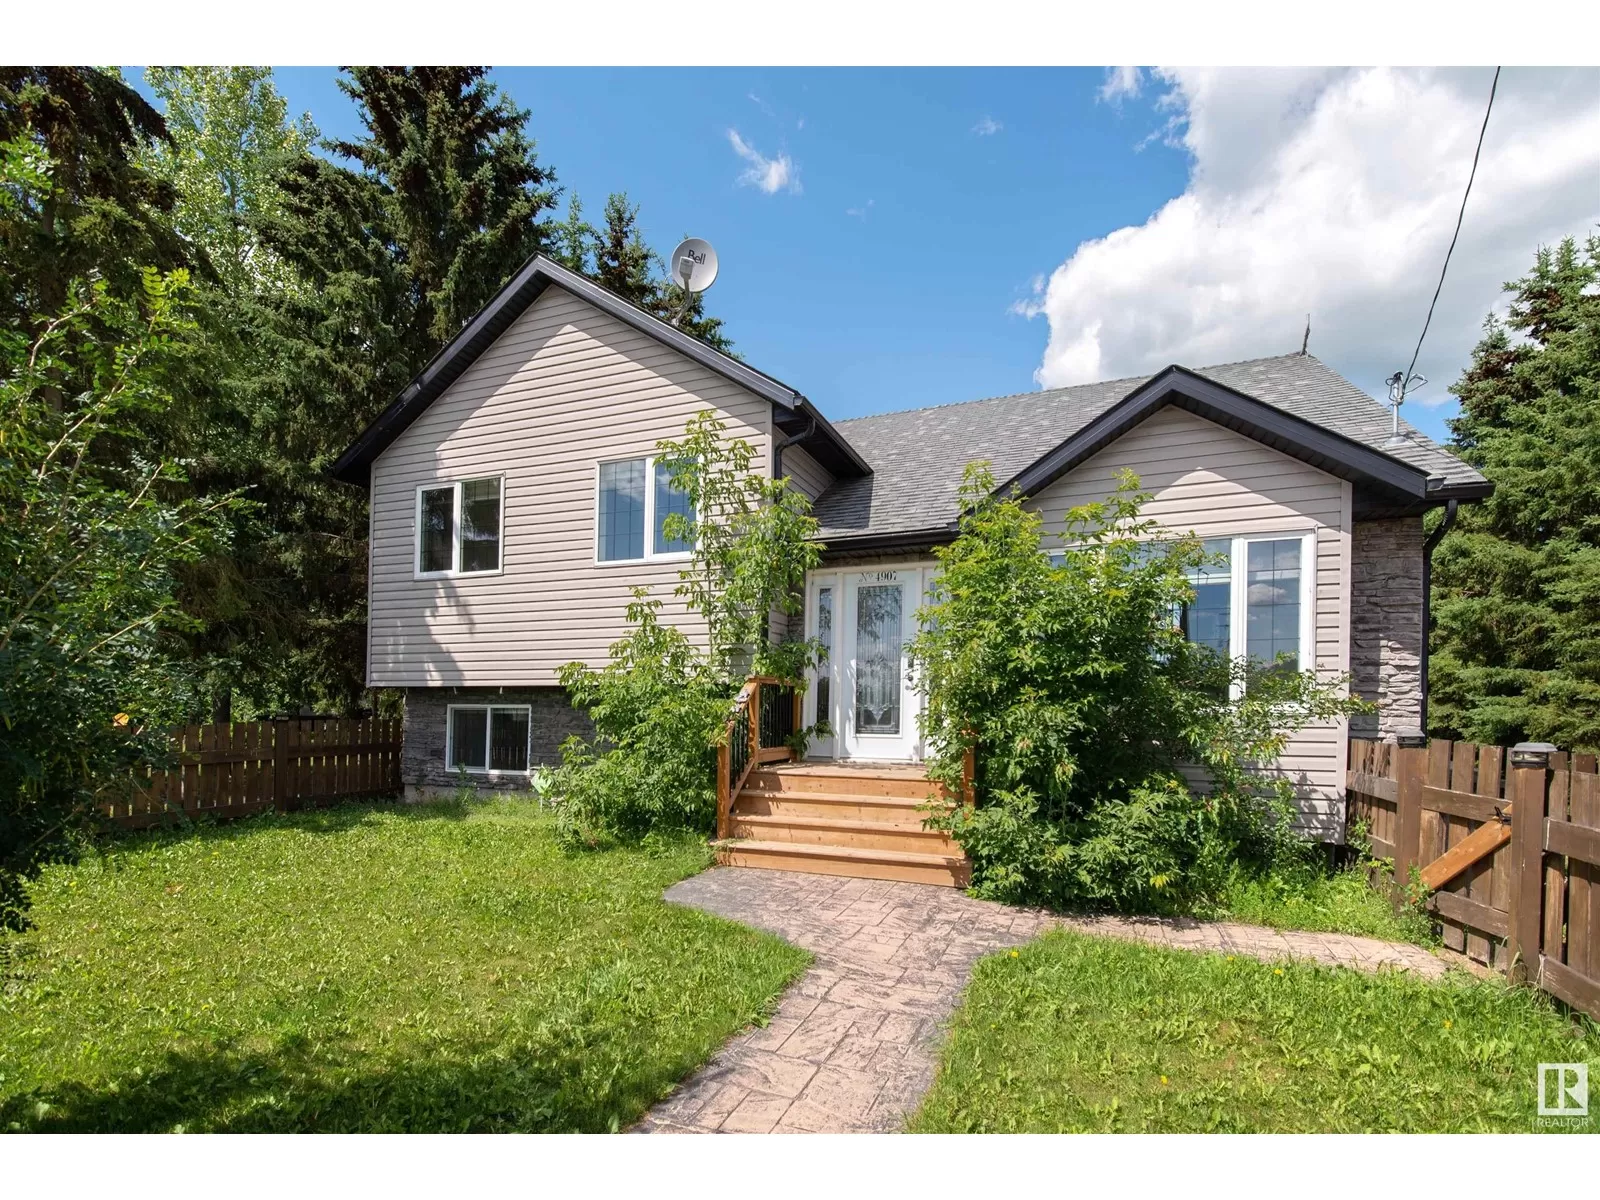 House for rent: 4907 50 Av, Fort Kent, Alberta T9N 0H1